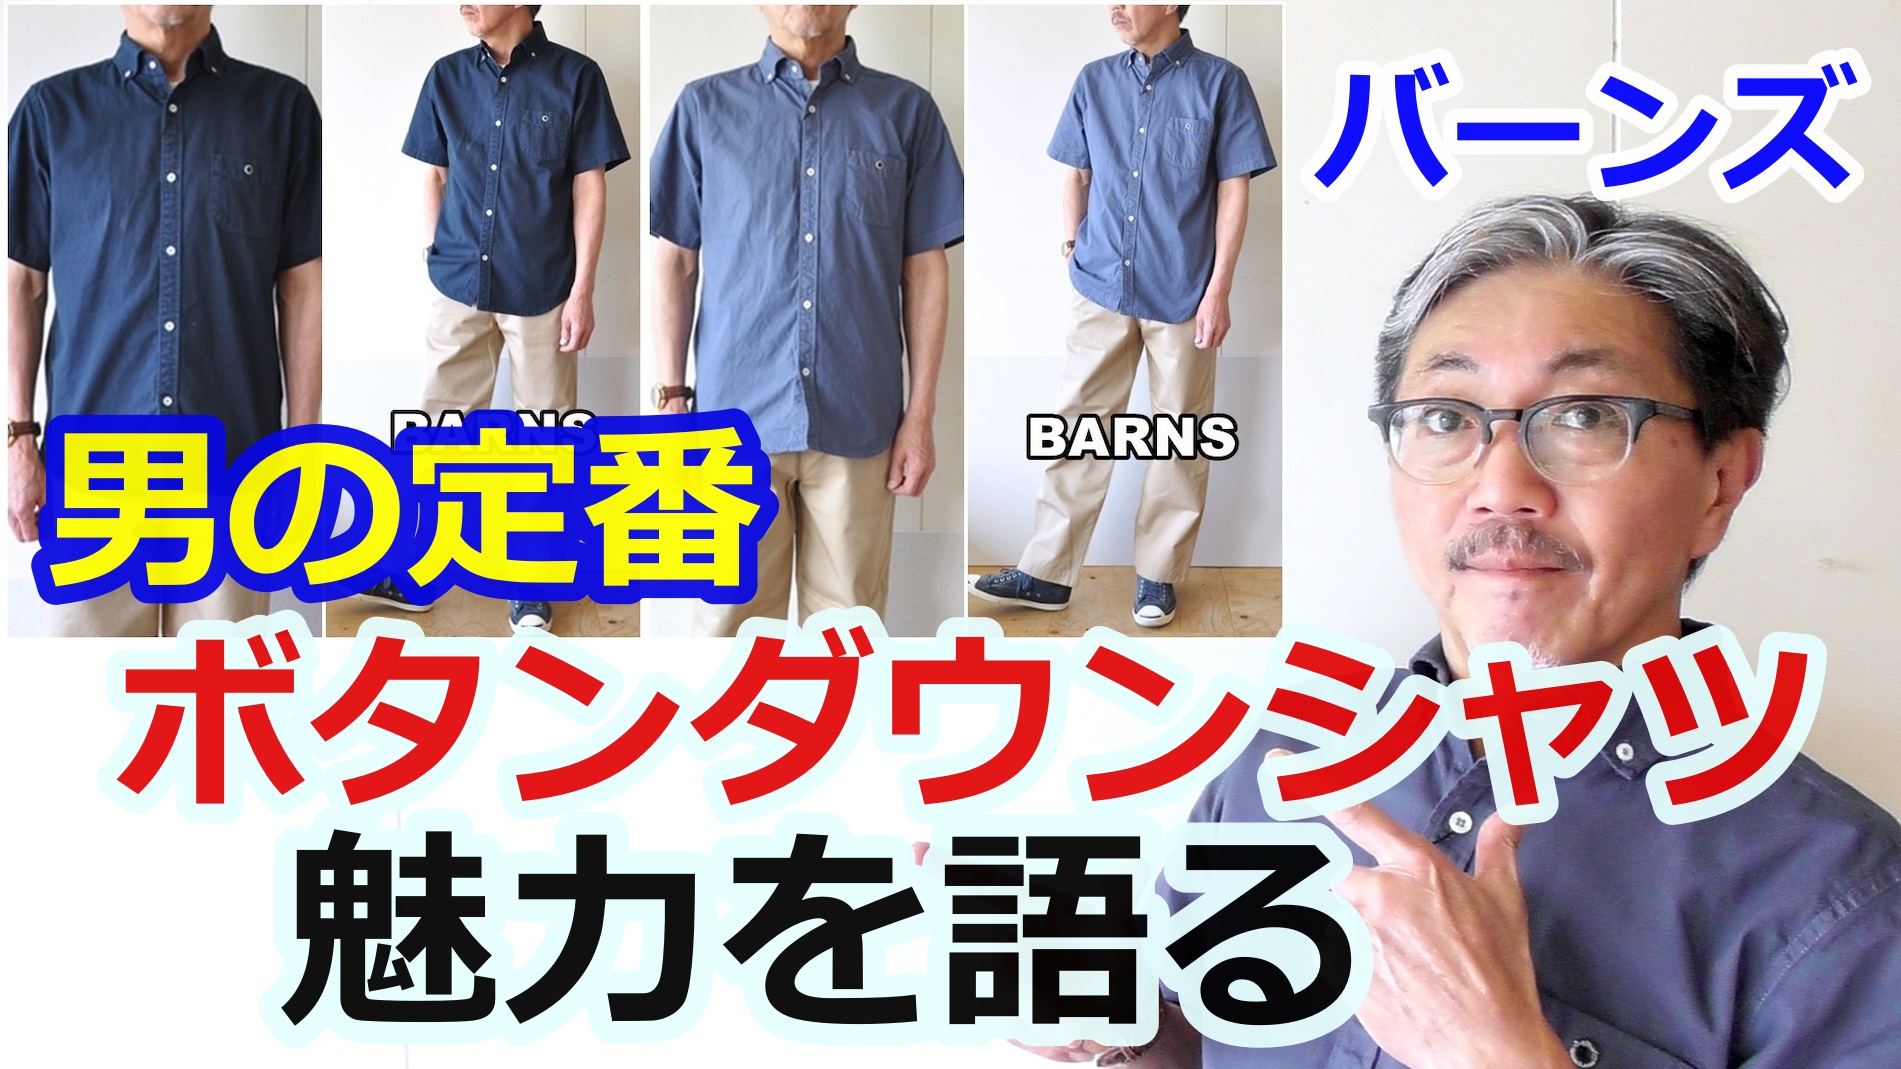 日本製にこだわるバーンズより、ワイドスプレッド半袖ボタンダウンシャツの魅力に迫ります